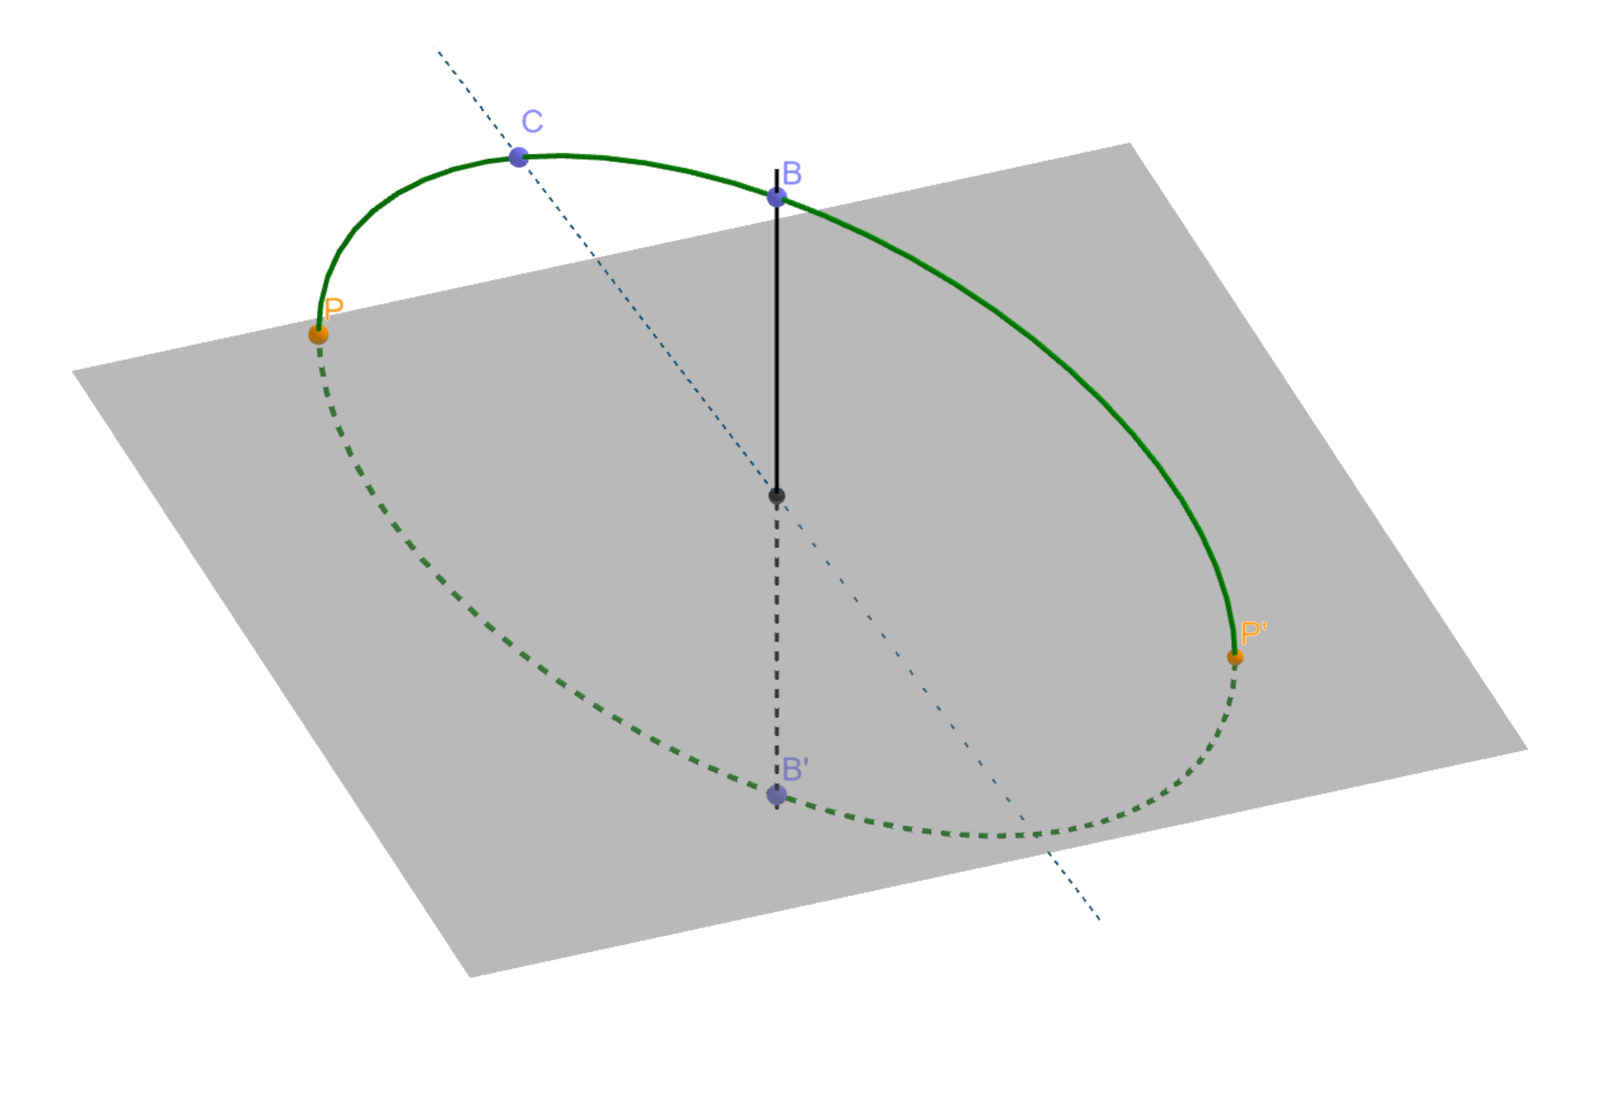 Aplet przedstawia konstrukcję elipsoidy obrotowej. Na płaszczyźnie kreślimy elipsę. Obracając elipsę wokół osi obrotu otrzymujemy elipsoidę obrotową.